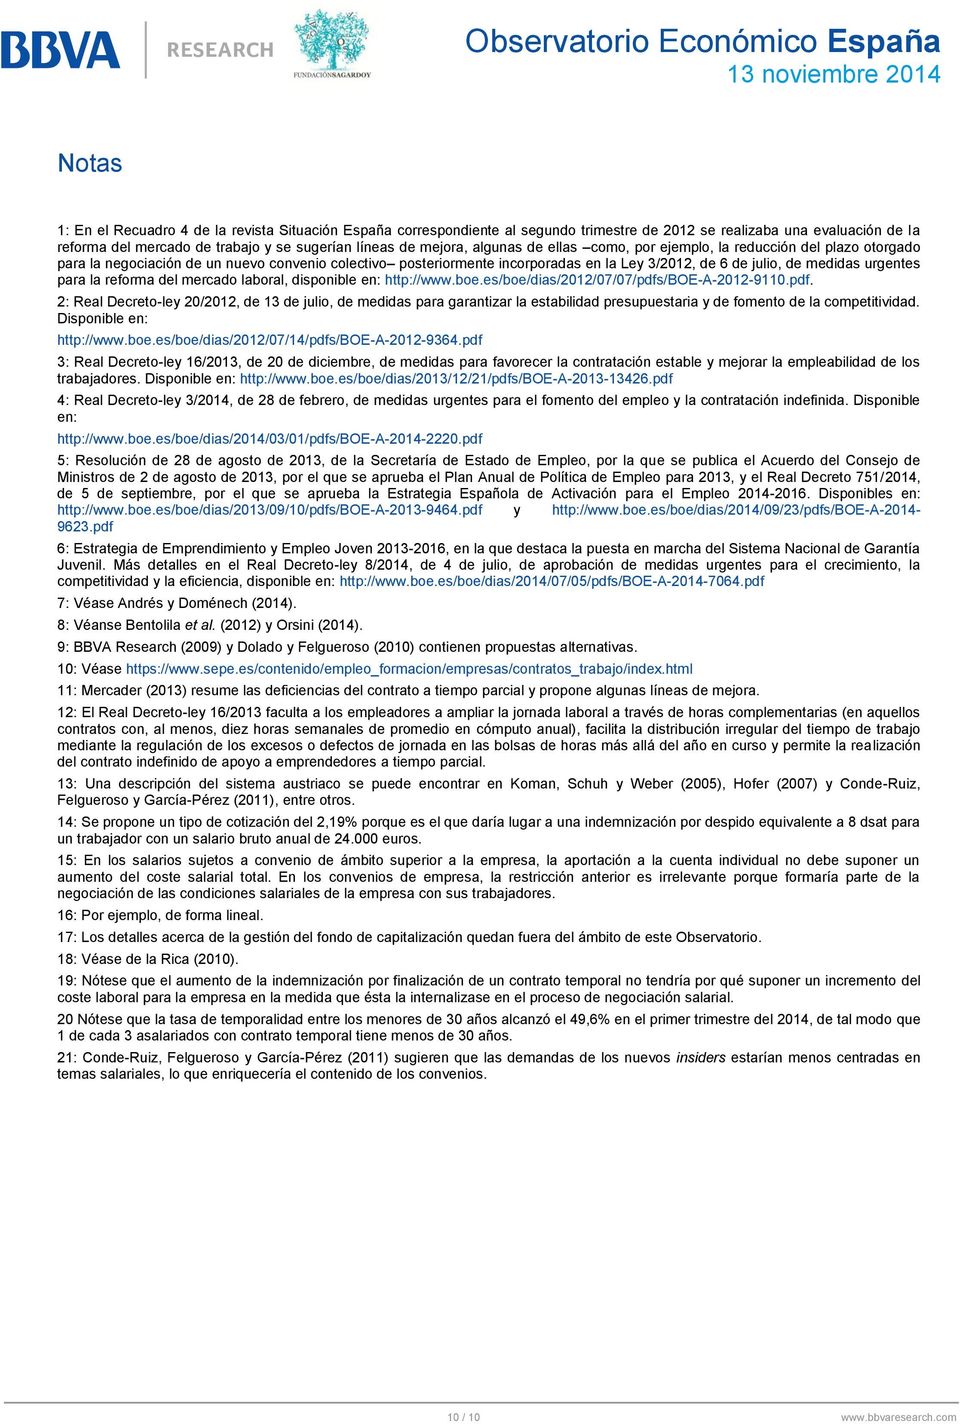 para la reforma del mercado laboral, disponible en: http://www.boe.es/boe/dias/212/7/7/pdfs